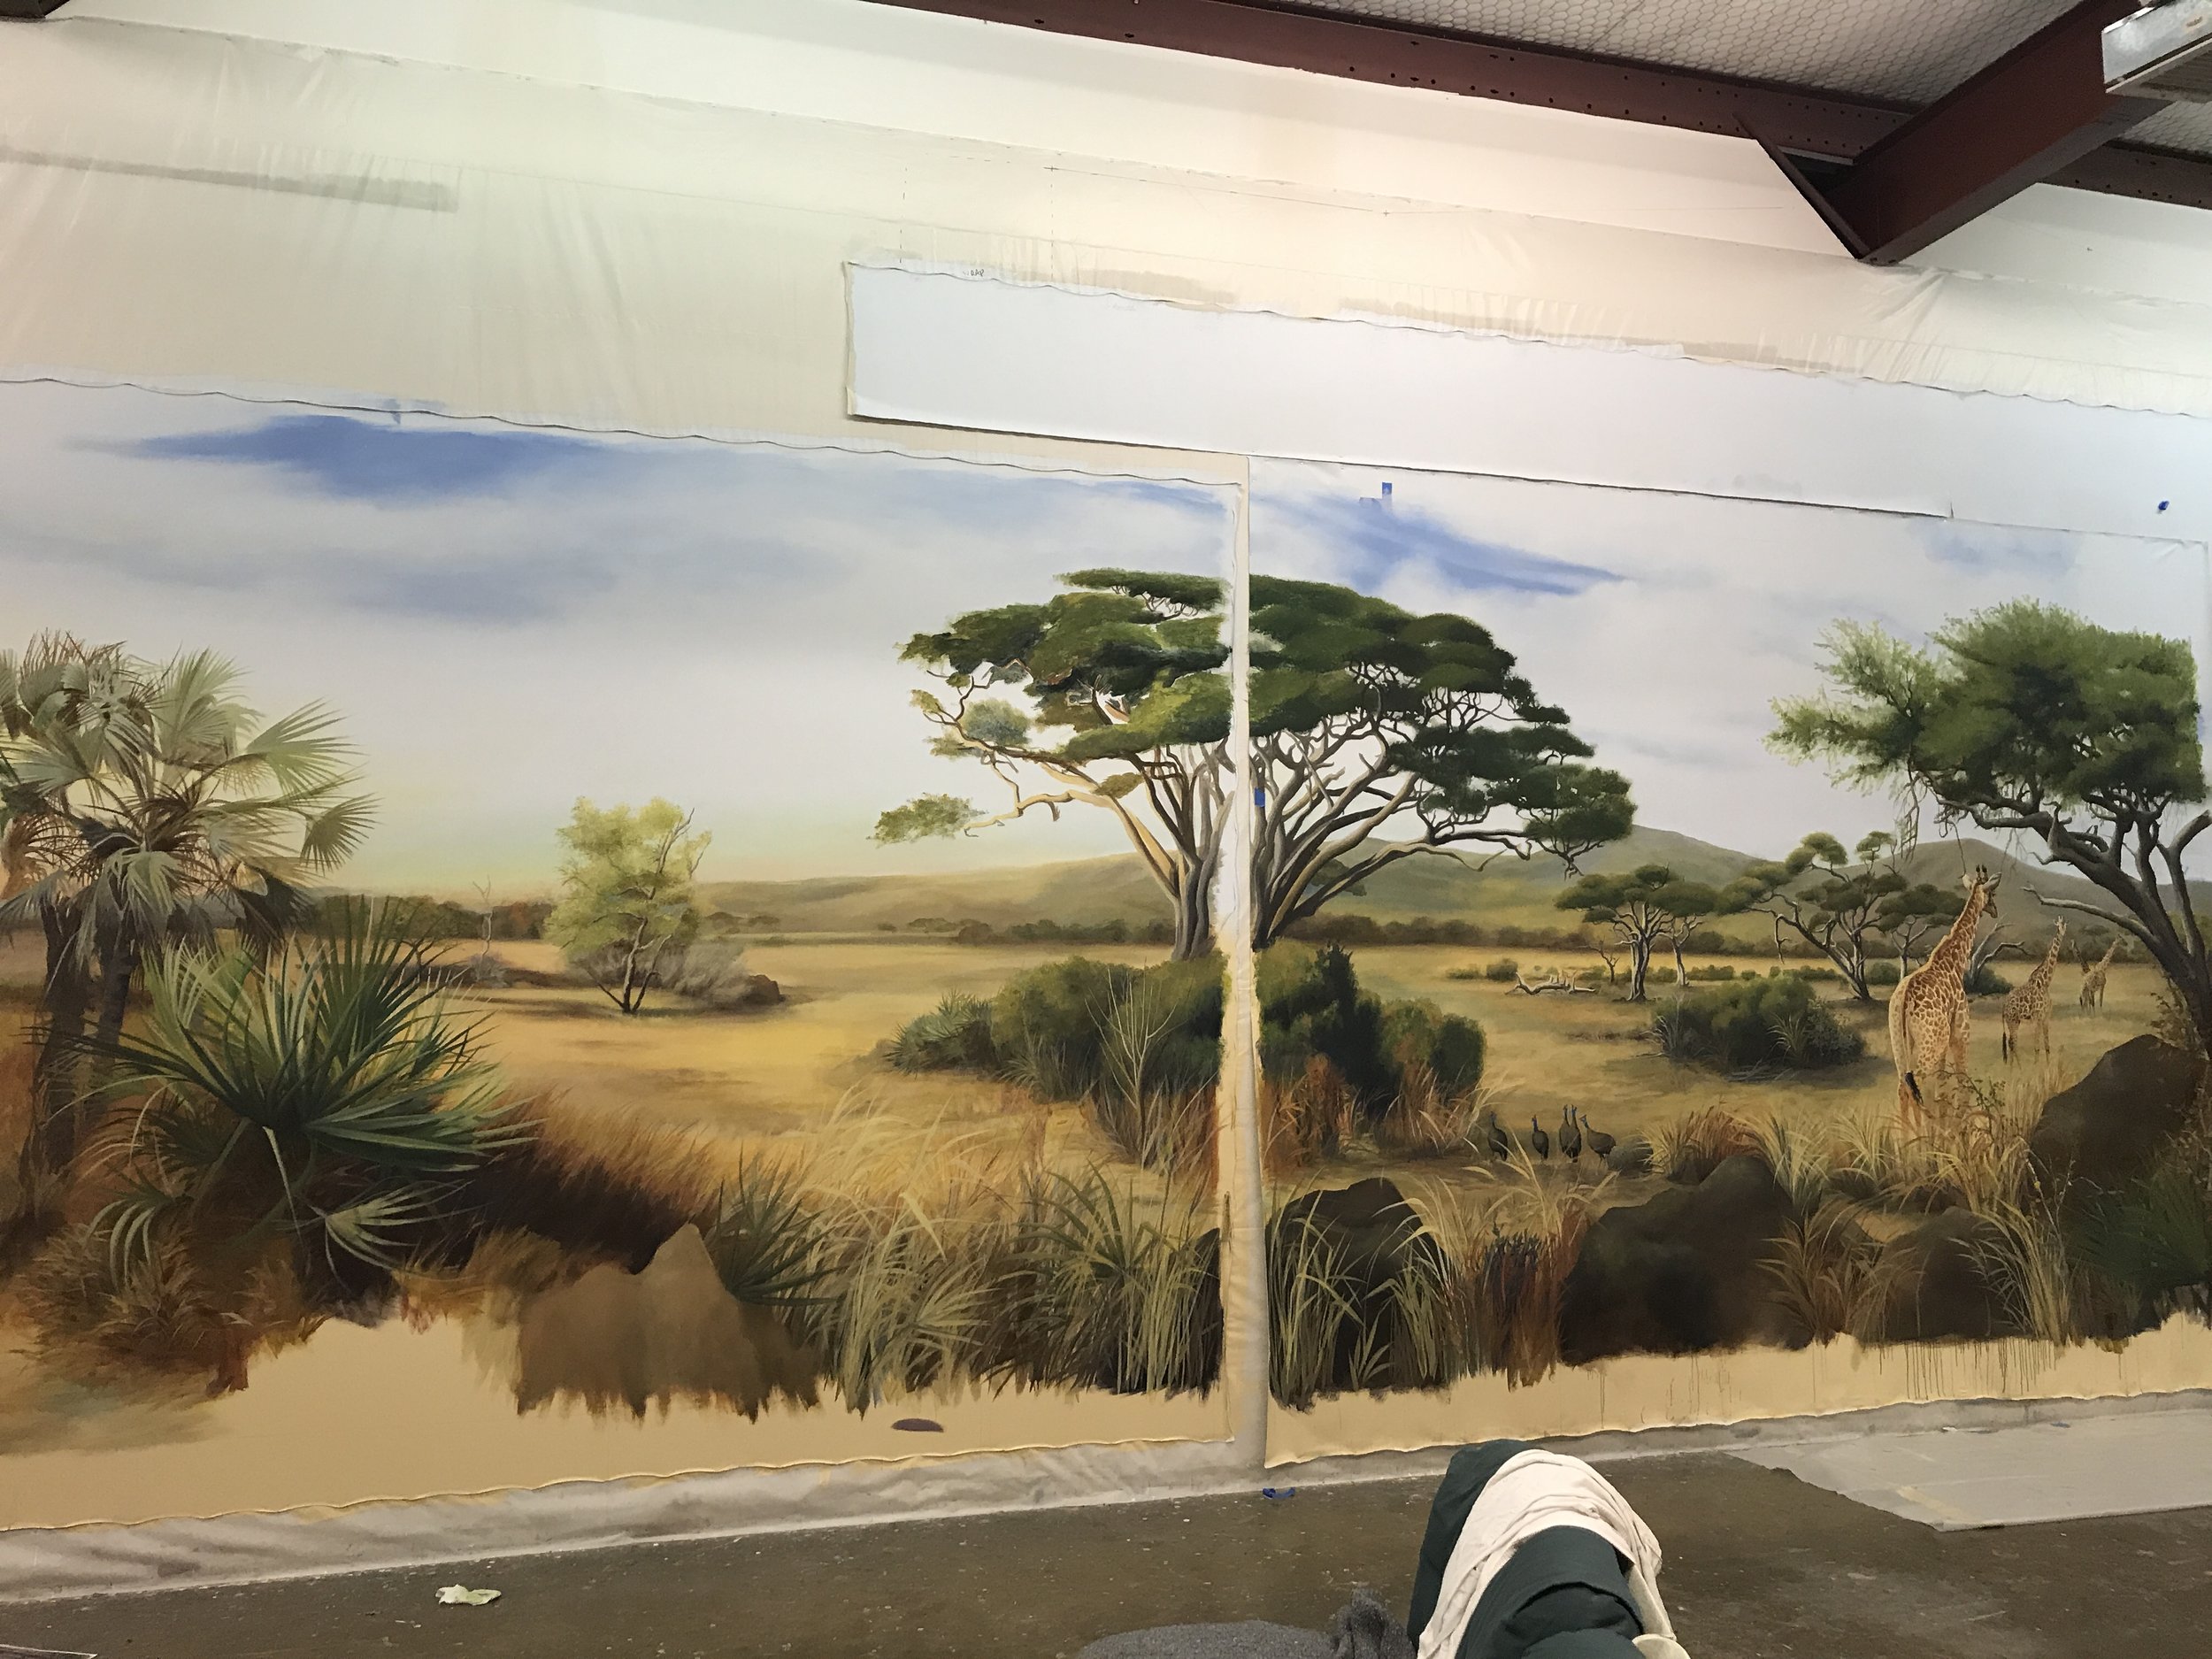 JAS Ranch Trophy Room mural in progress at studio 2020